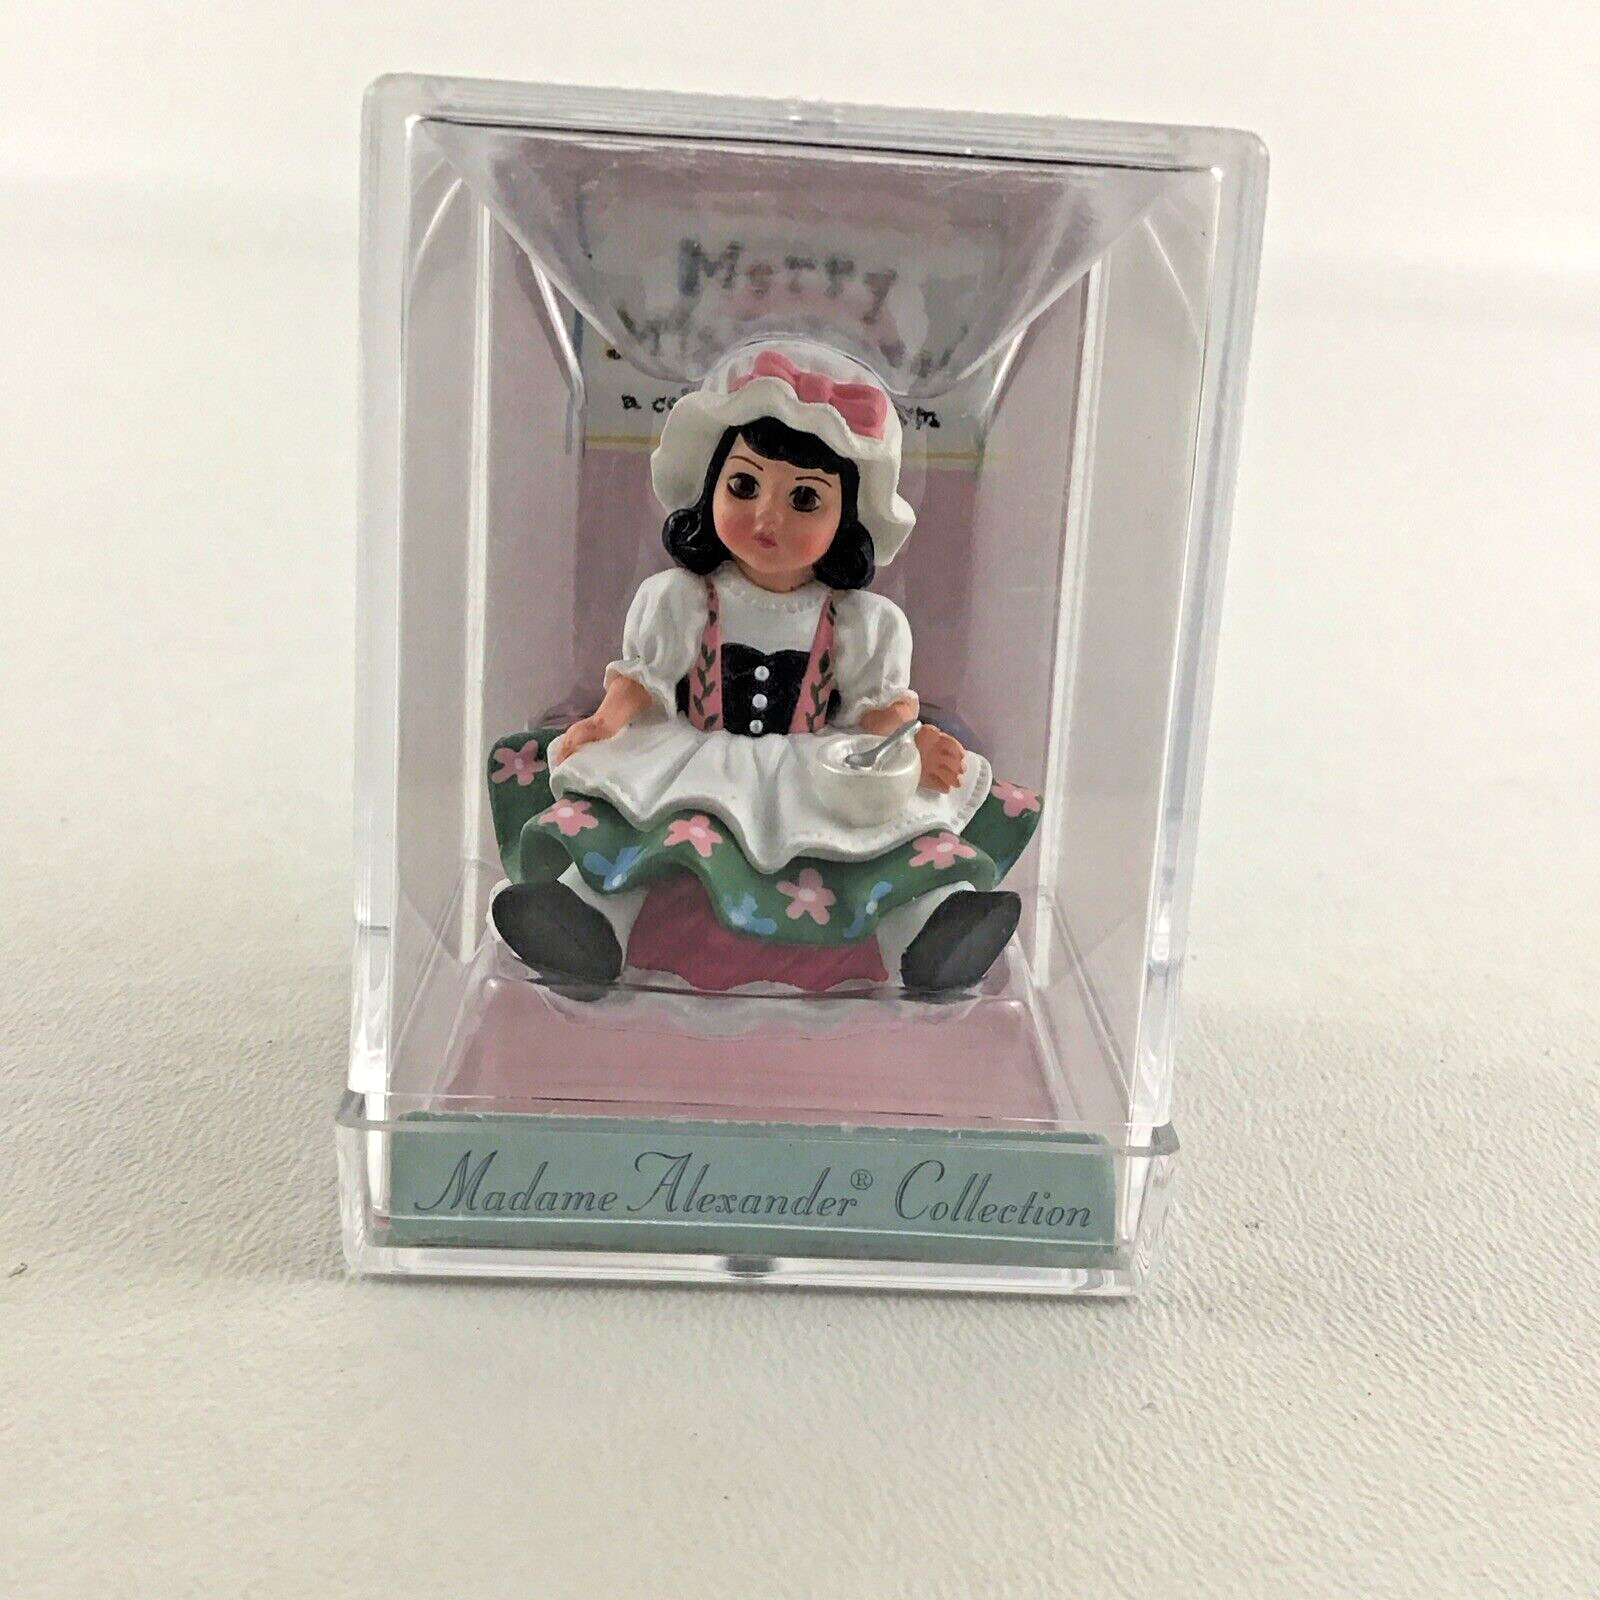 Hallmark Merry Miniatures Madame Alexander Collection Little Miss Muffet 1998